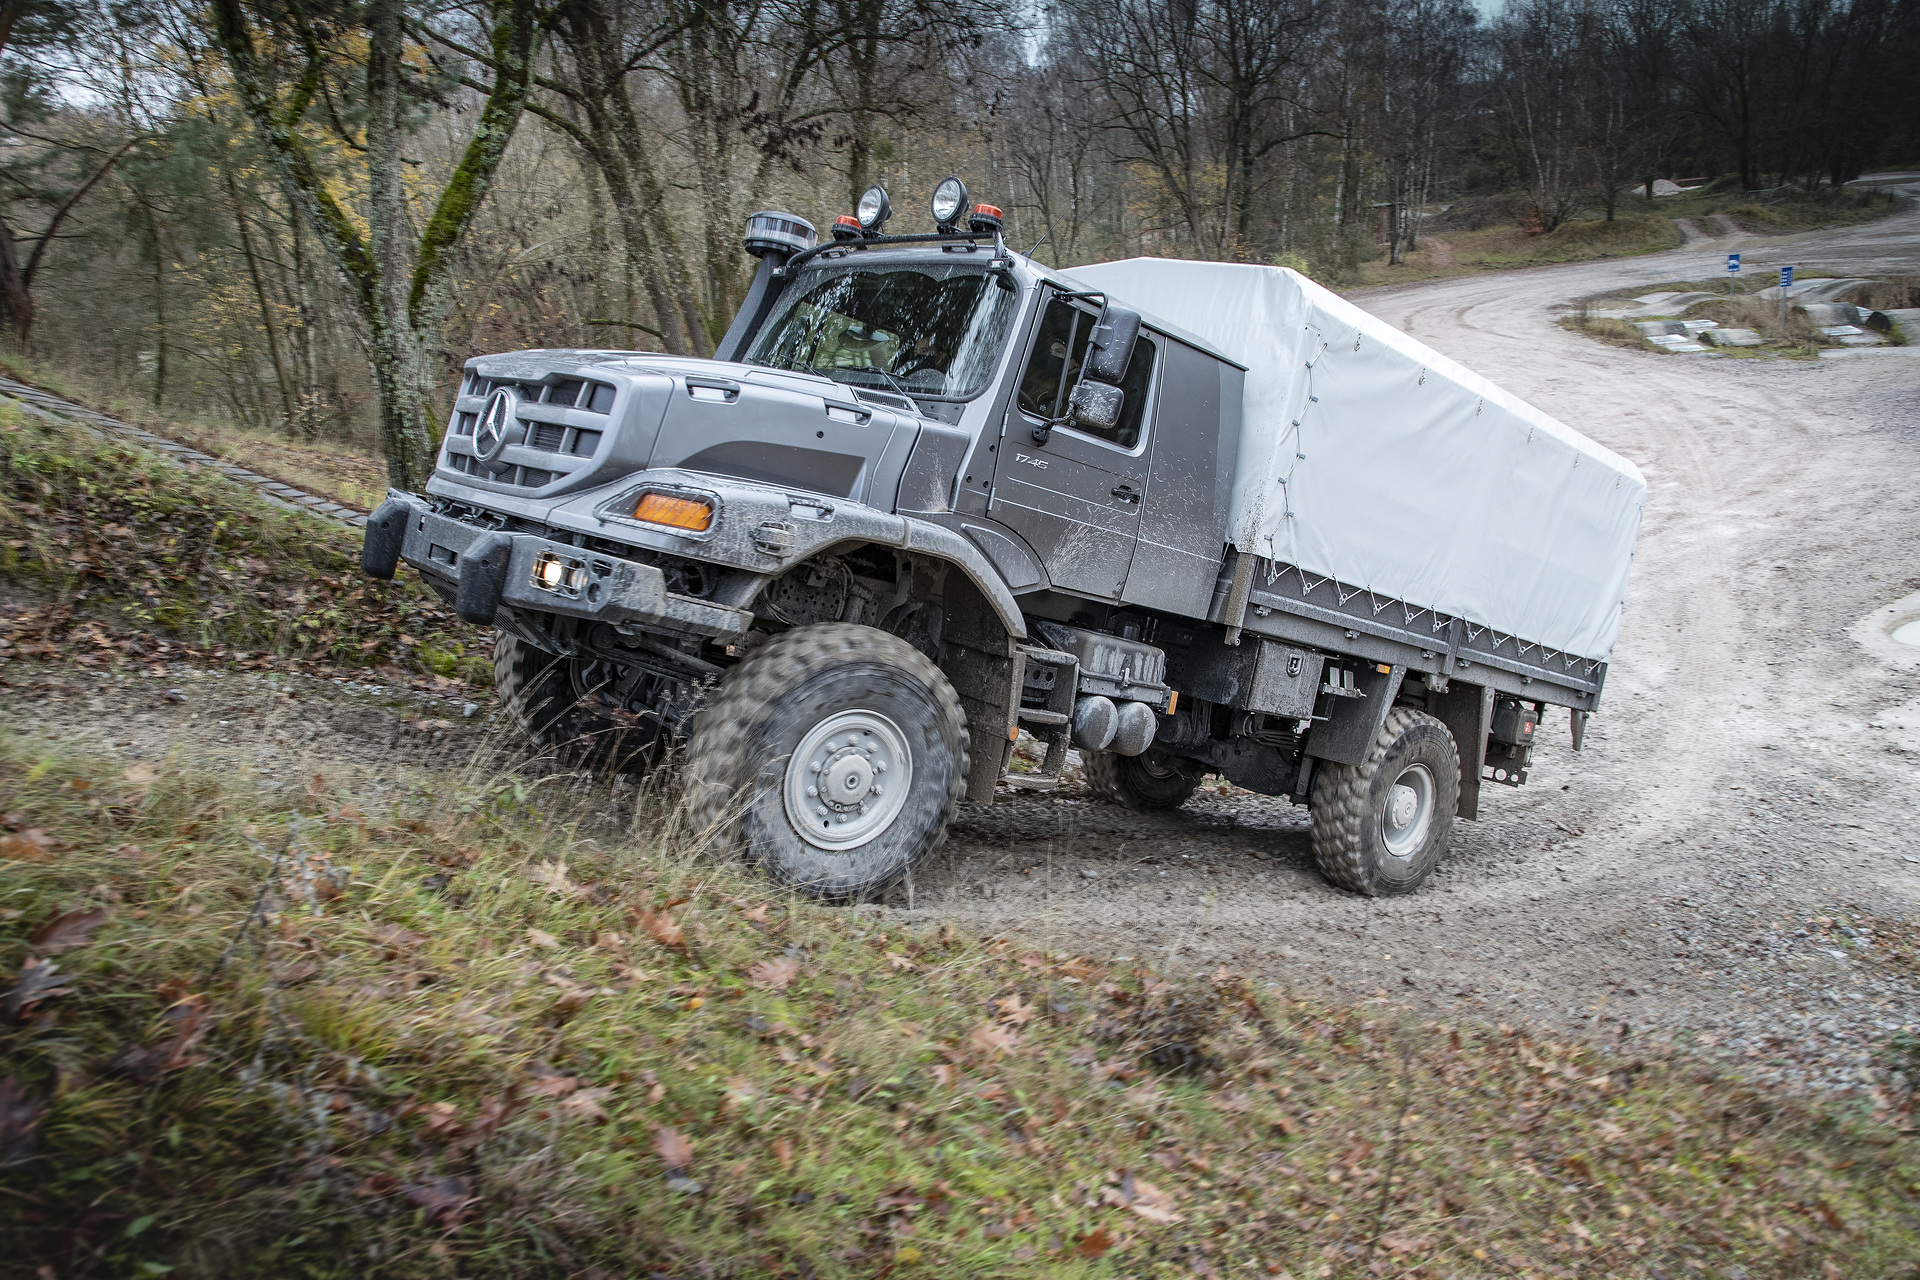 Mercedes-Benz Special Trucks liefert über 100 Zetros Offroad-Lkw an Ukraine